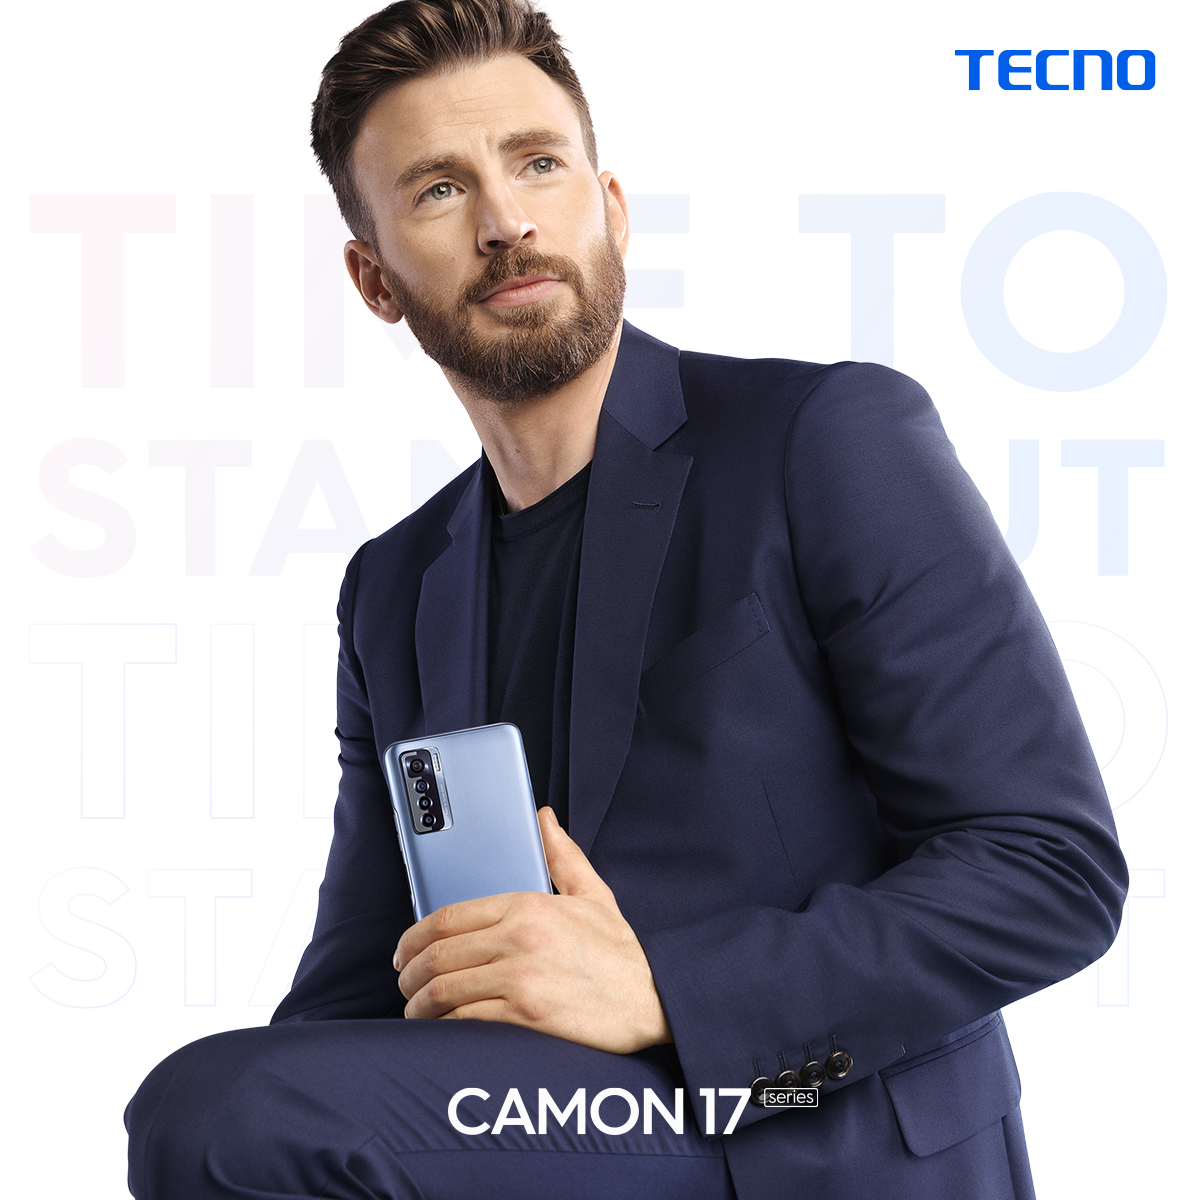 TECNO Mobile anuncia al actor Chris Evans como su nuevo embajador de marca para su estrategia de globalización.